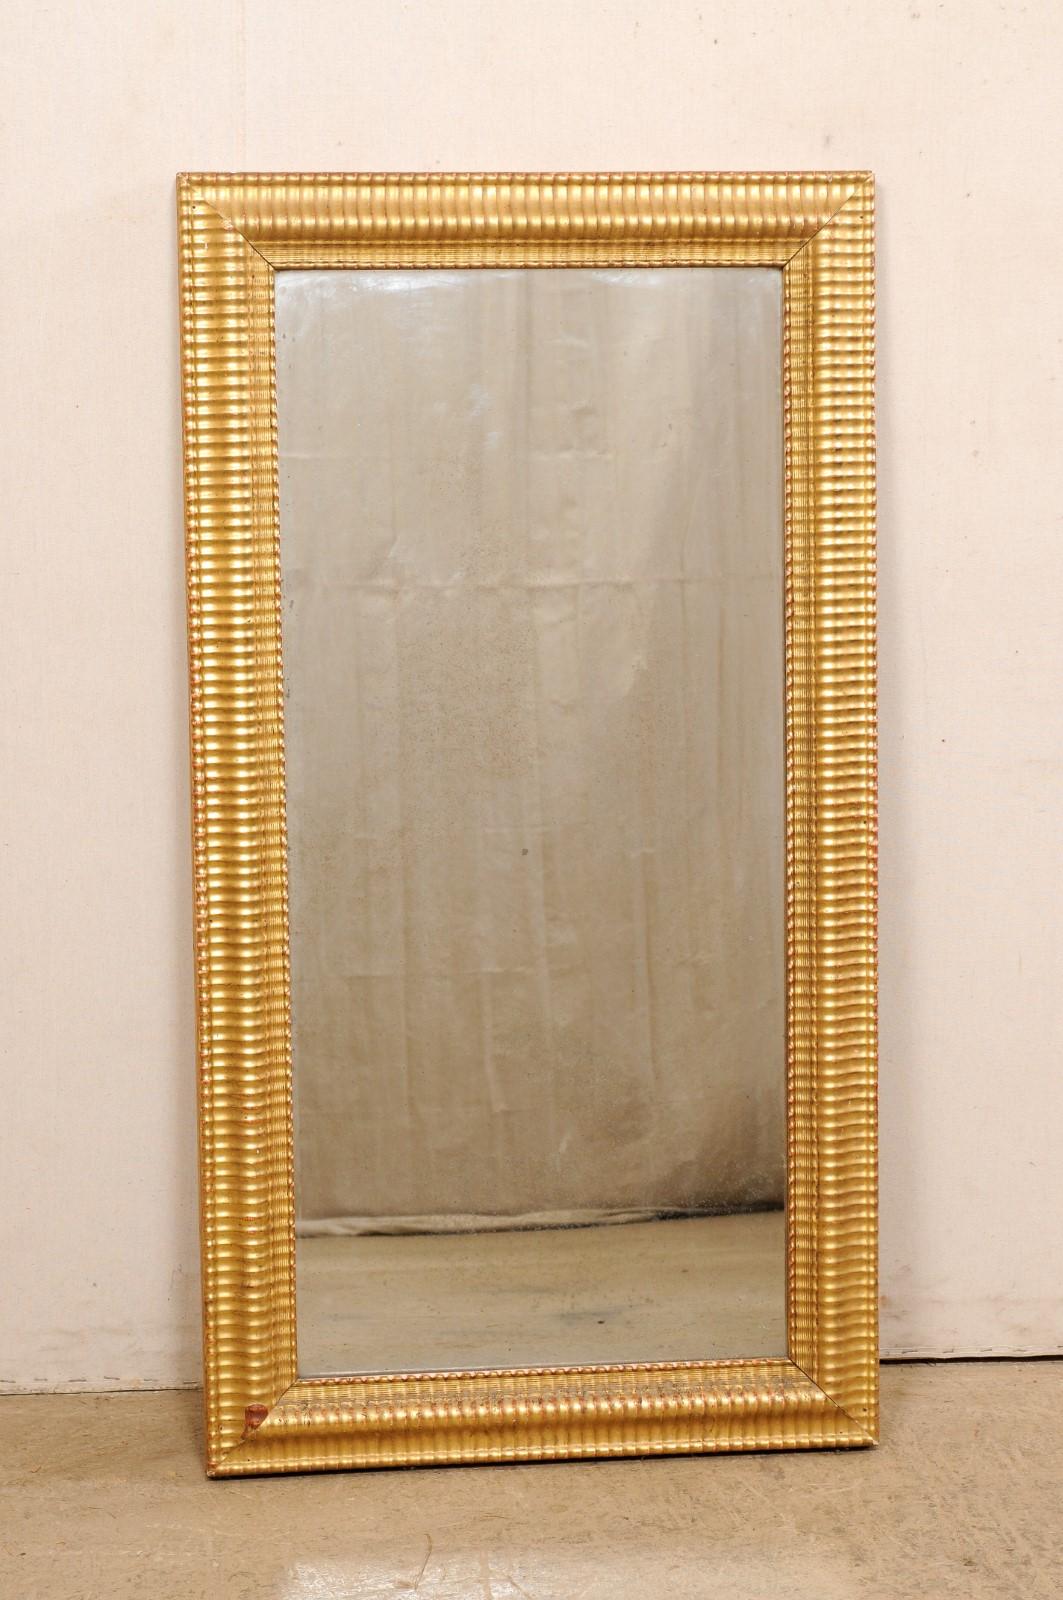 Ein französischer geschnitzter und vergoldeter rechteckiger Wandspiegel aus dem 19. Jahrhundert. Dieser antike Spiegel aus Frankreich hat einen rechteckigen Rahmen mit einem sich wiederholenden Rippenmuster, das ihm eine subtile Bewegung und